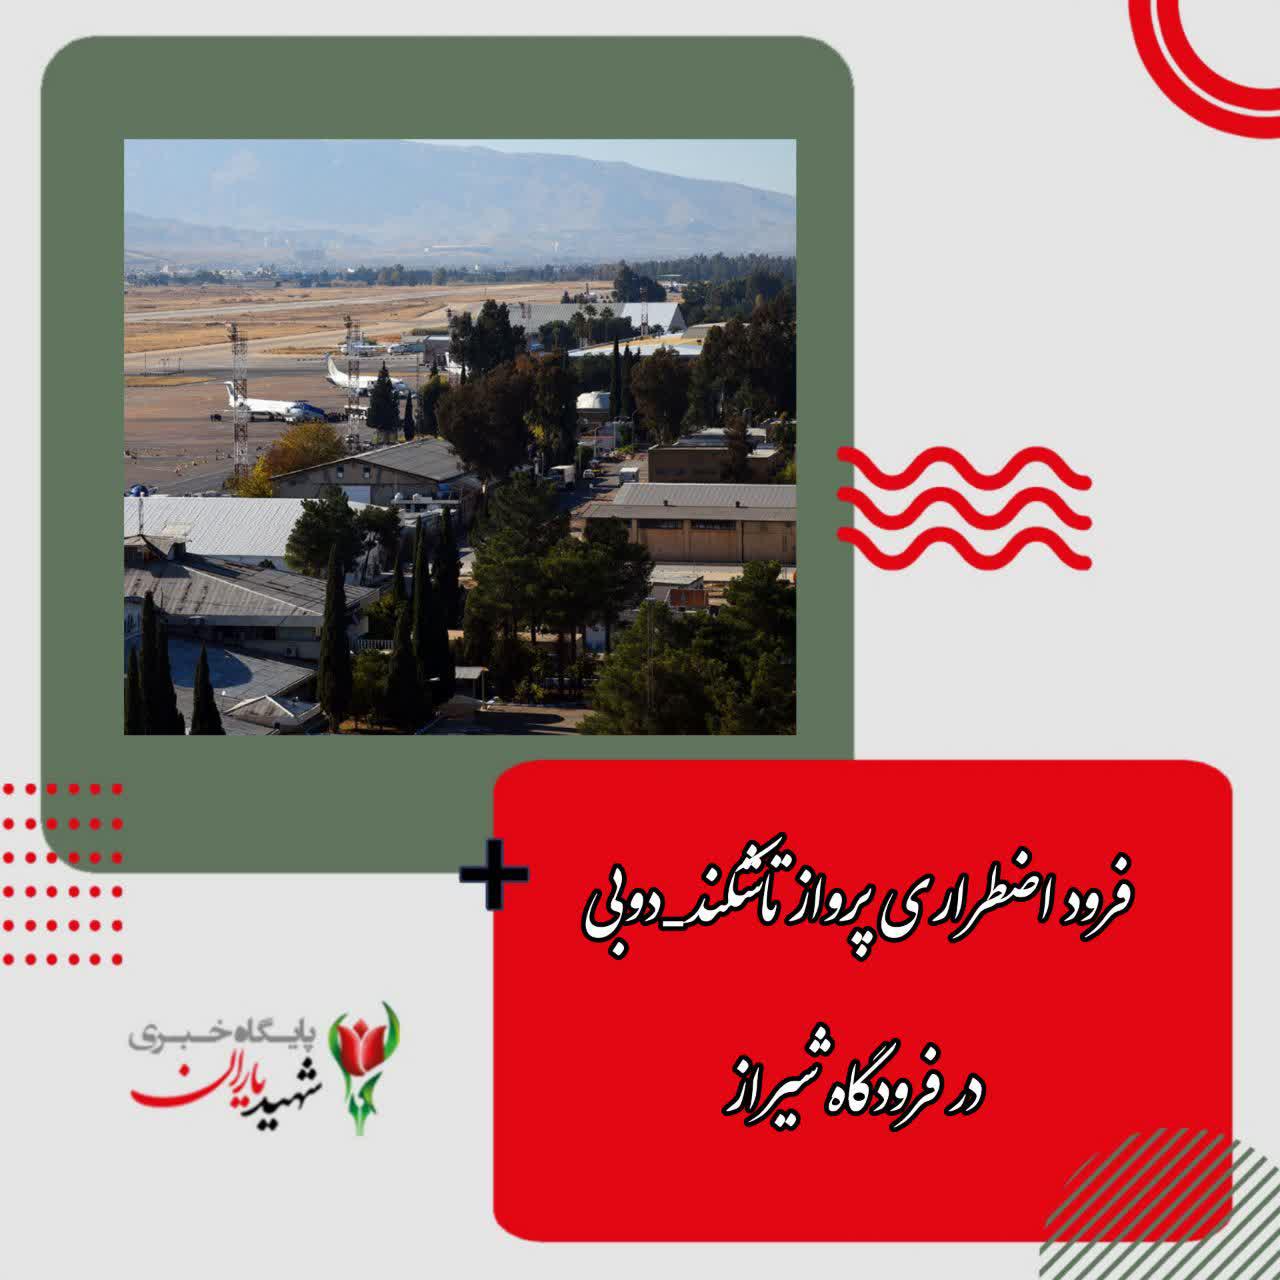 فرود اضطراری پرواز تاشکند ،دوبی در فرودگاه شیراز